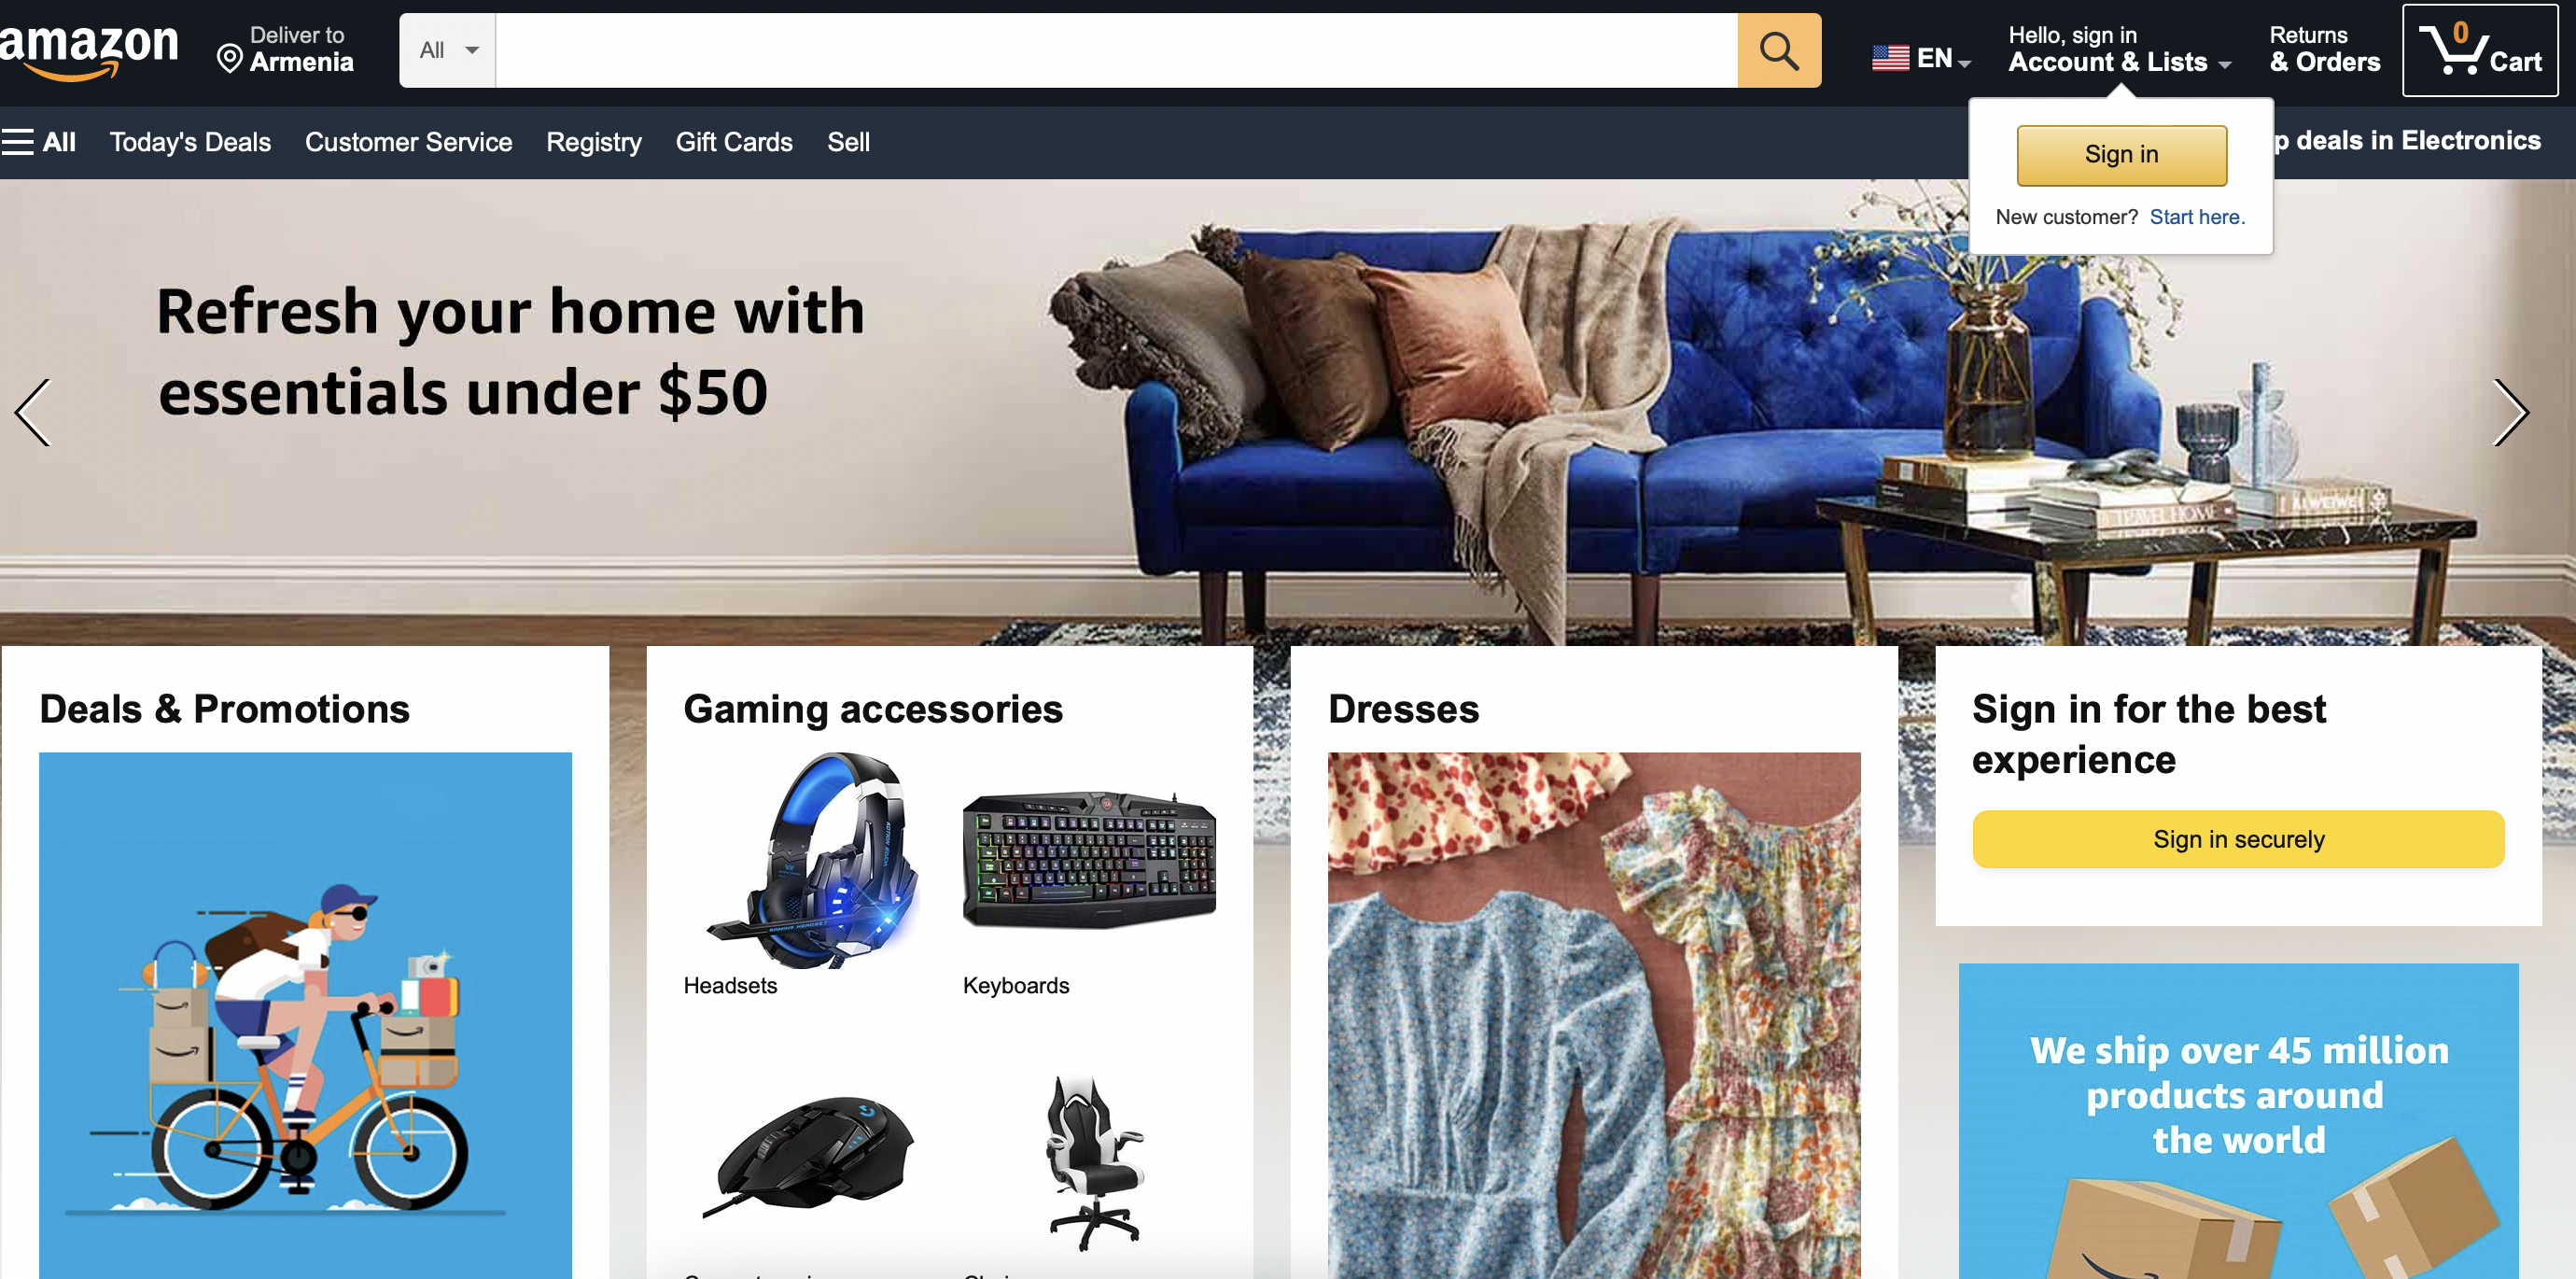 Что продавать на Amazon? Тонкости онлайн-торговли